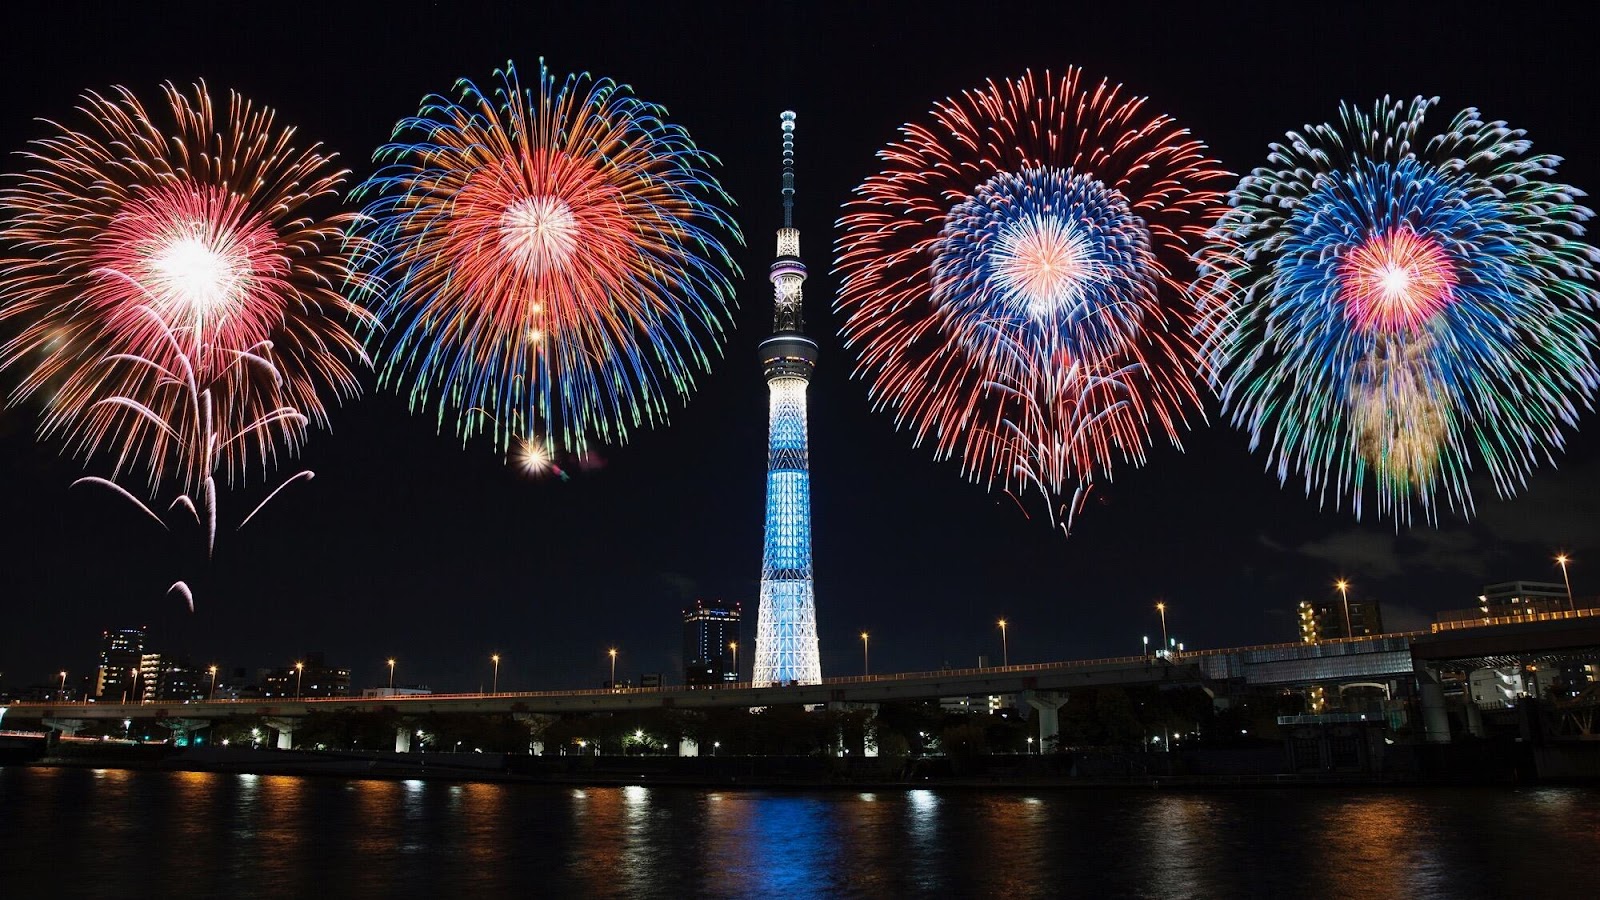 ความเป็นมาของเทศกาลดอกไม้ไฟ พร้อมสถานที่จัดงานสุดอลังการณ์ของประเทศญี่ปุ่น! 11